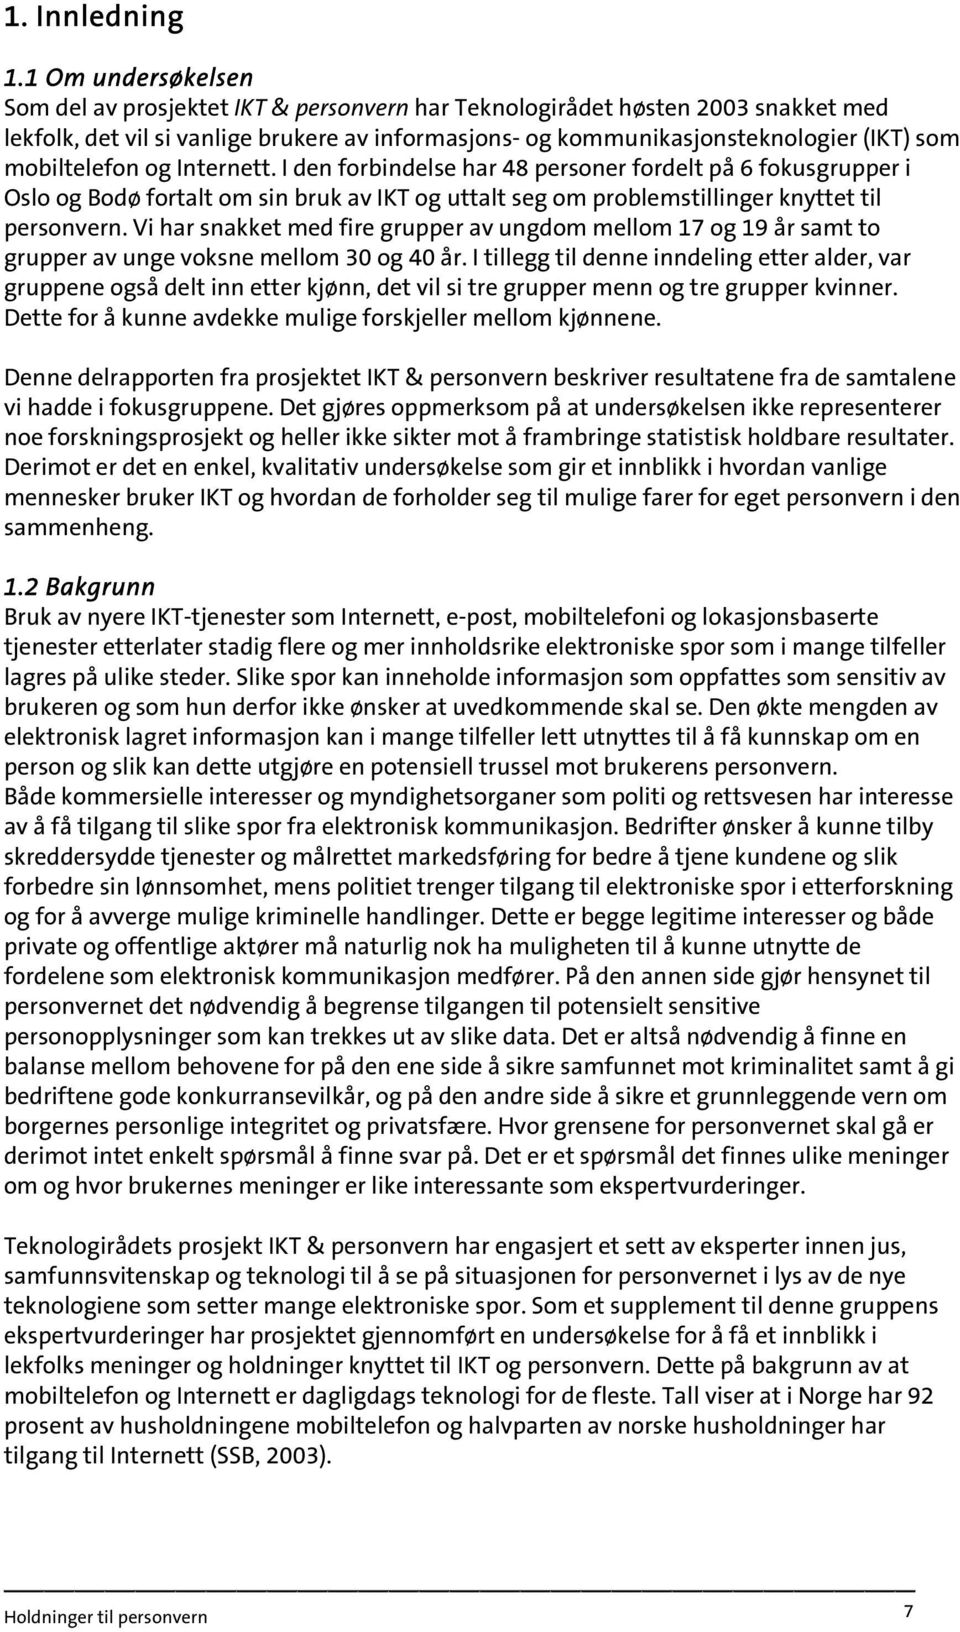 mobiltelefon og Internett. I den forbindelse har 48 personer fordelt på 6 fokusgrupper i Oslo og Bodø fortalt om sin bruk av IKT og uttalt seg om problemstillinger knyttet til personvern.